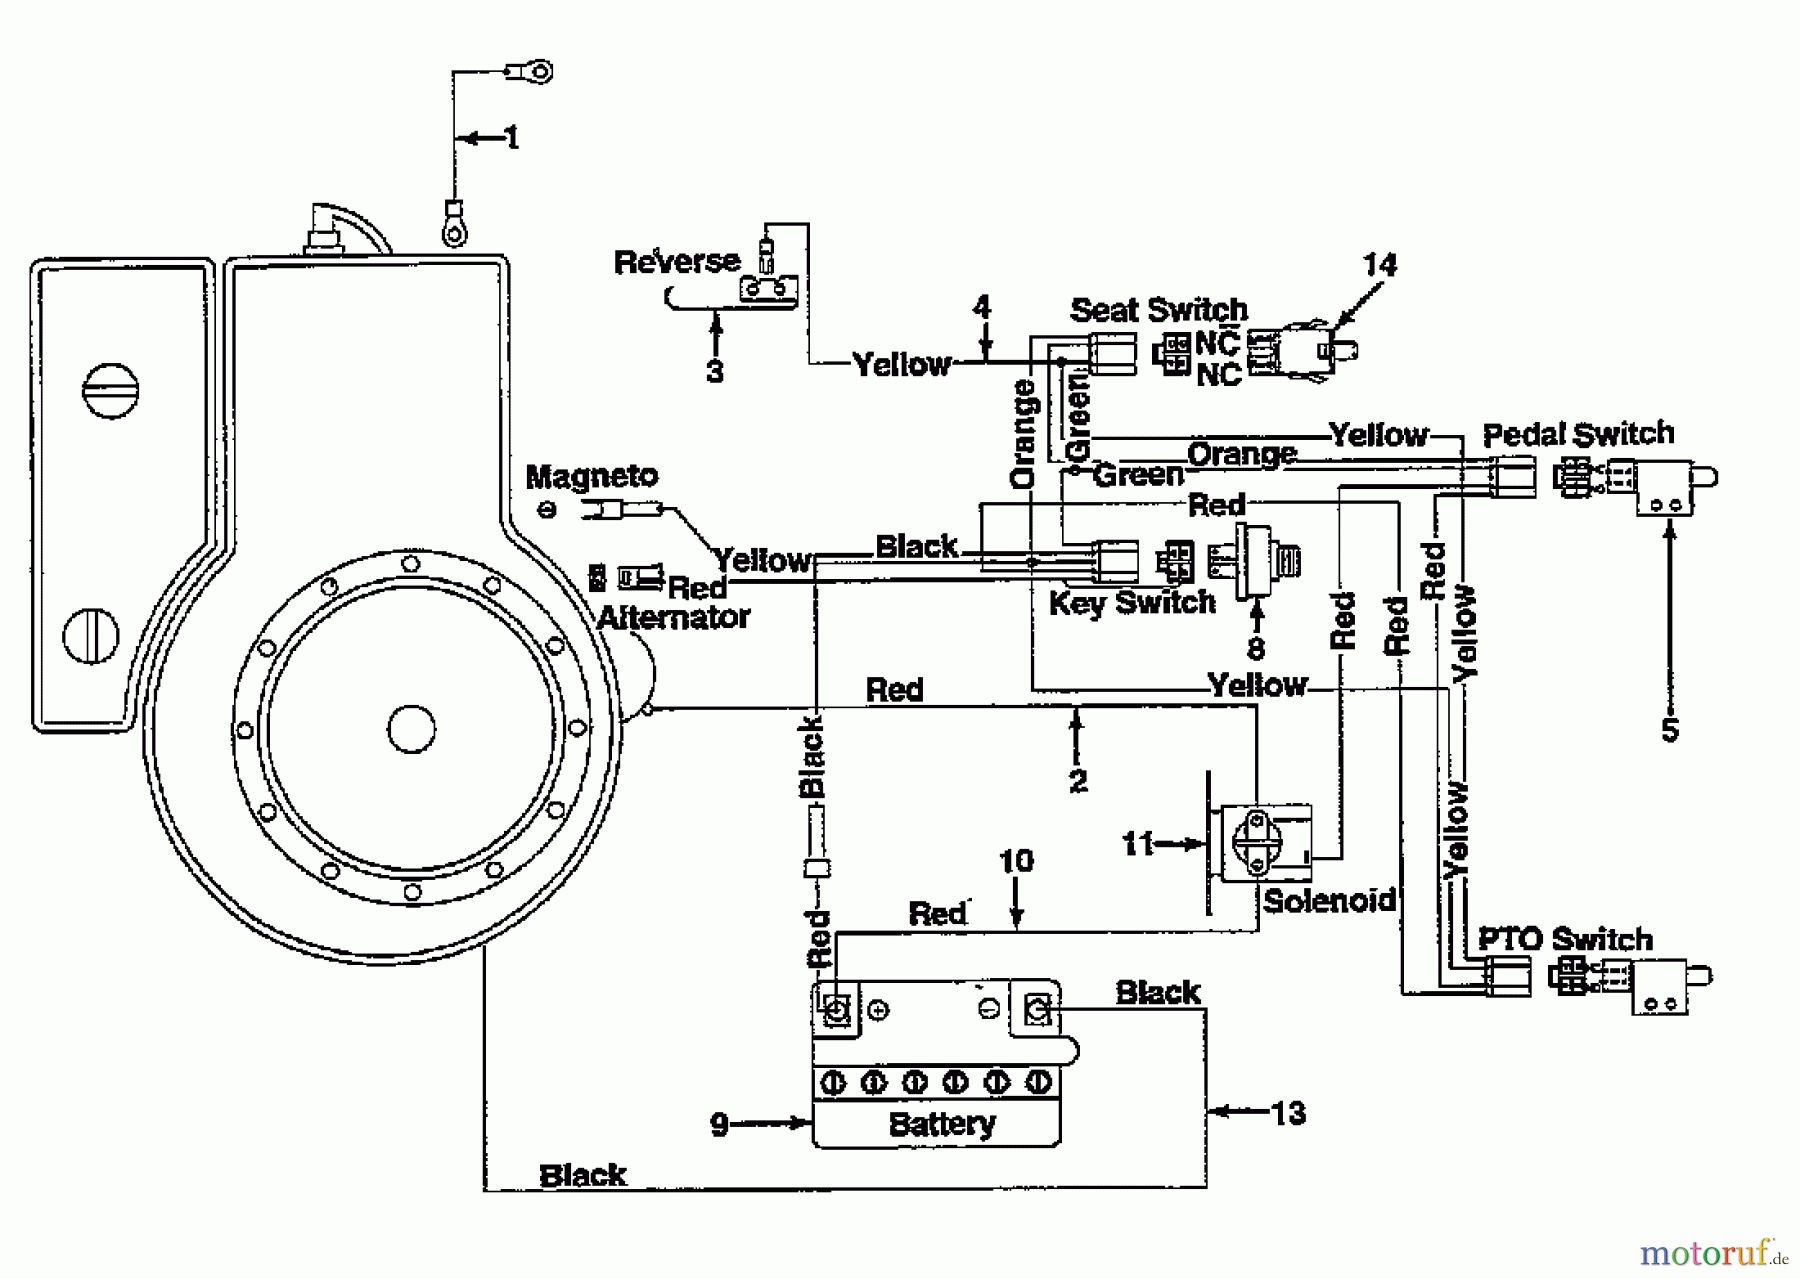  Motec Rasentraktoren ST 10 E 132-520C632  (1992) Schaltplan